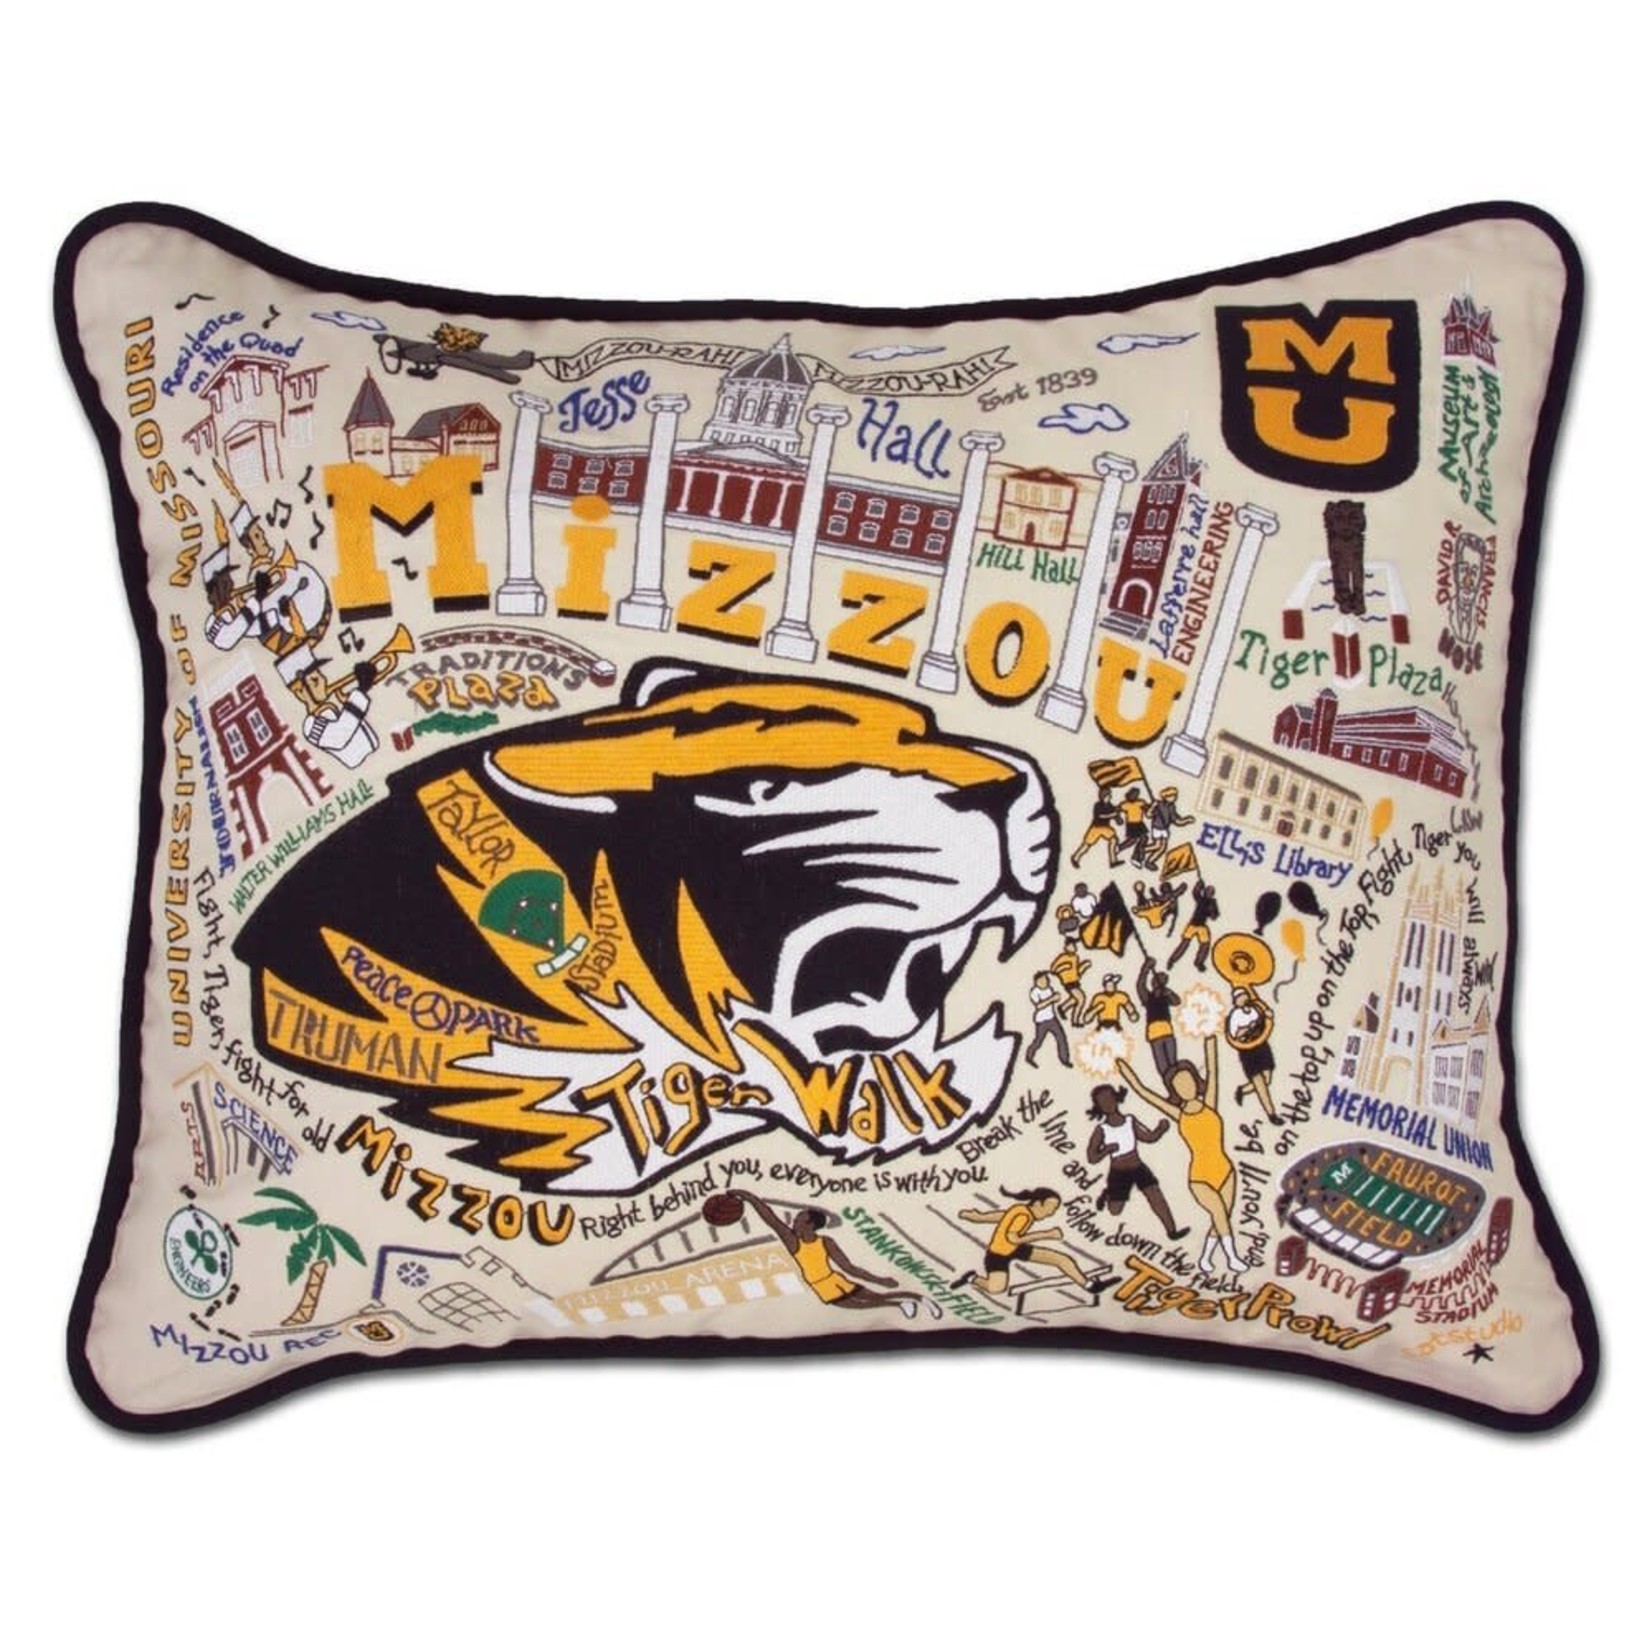 Catstudio Catstudio Collegiate University of Missouri Pillow